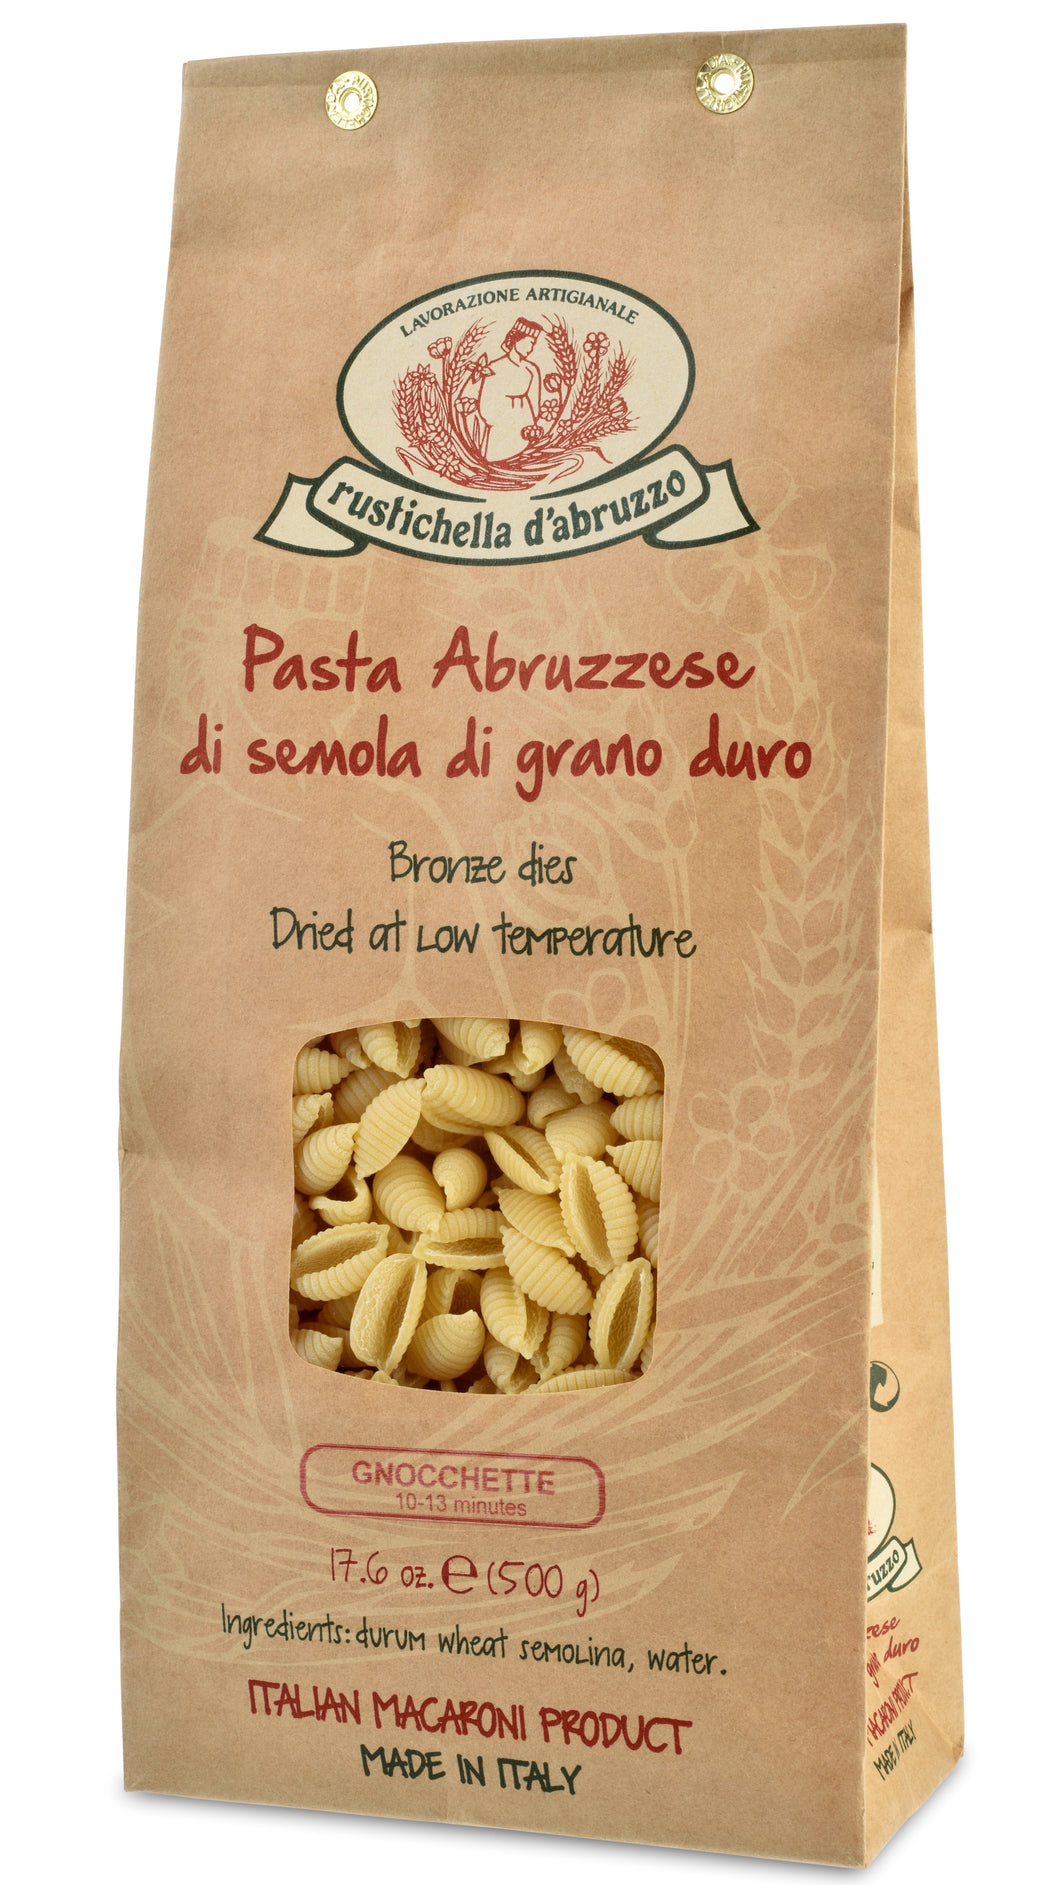 Gnocchette Pasta from Rustichella d'Abruzzo